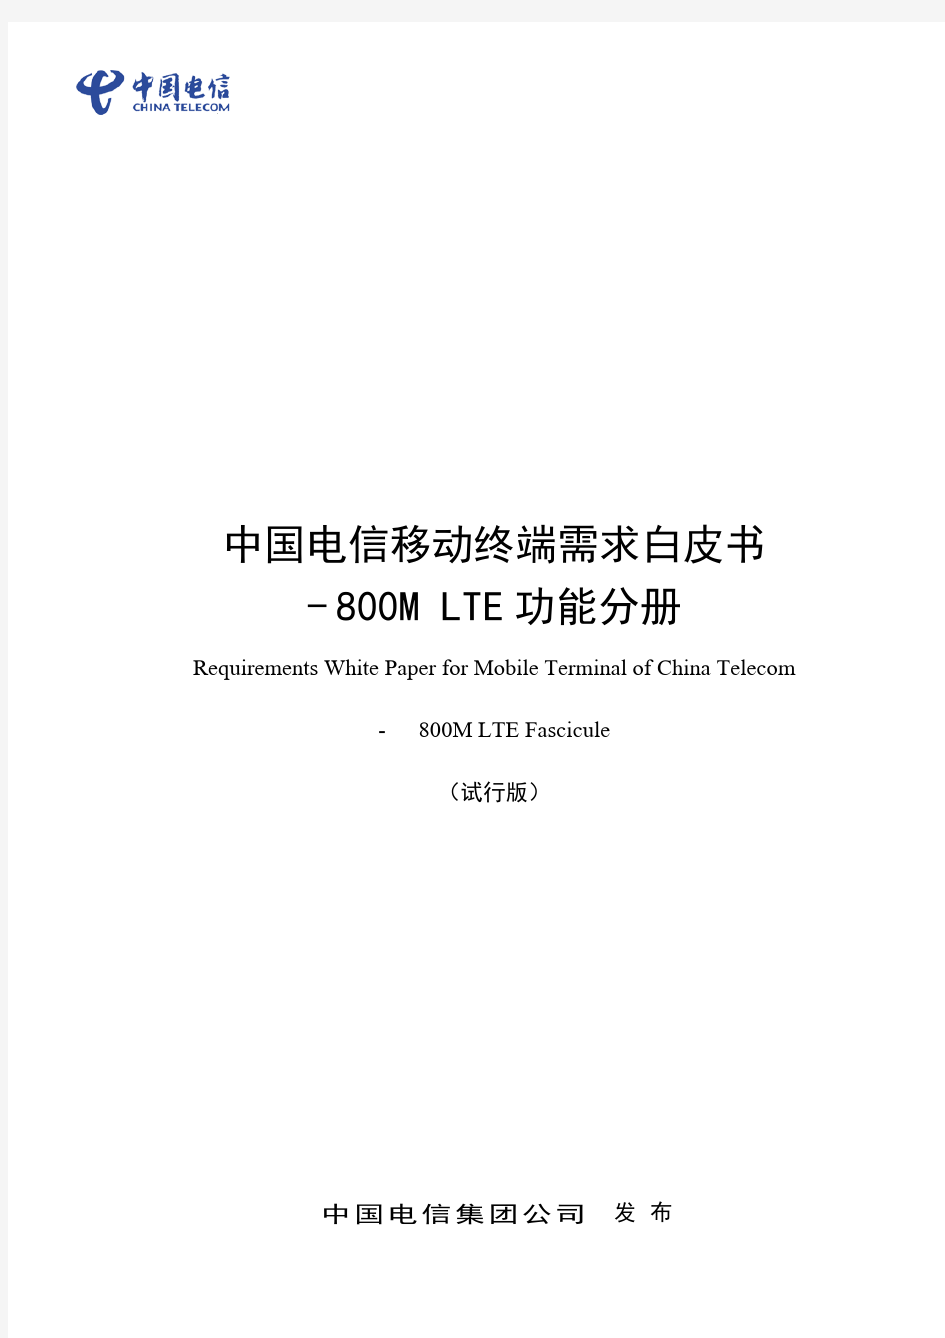 中国电信移动终端需求白皮书-800M+LTE功能分册(2016.V1),2016-07-19(1)20160728184821322